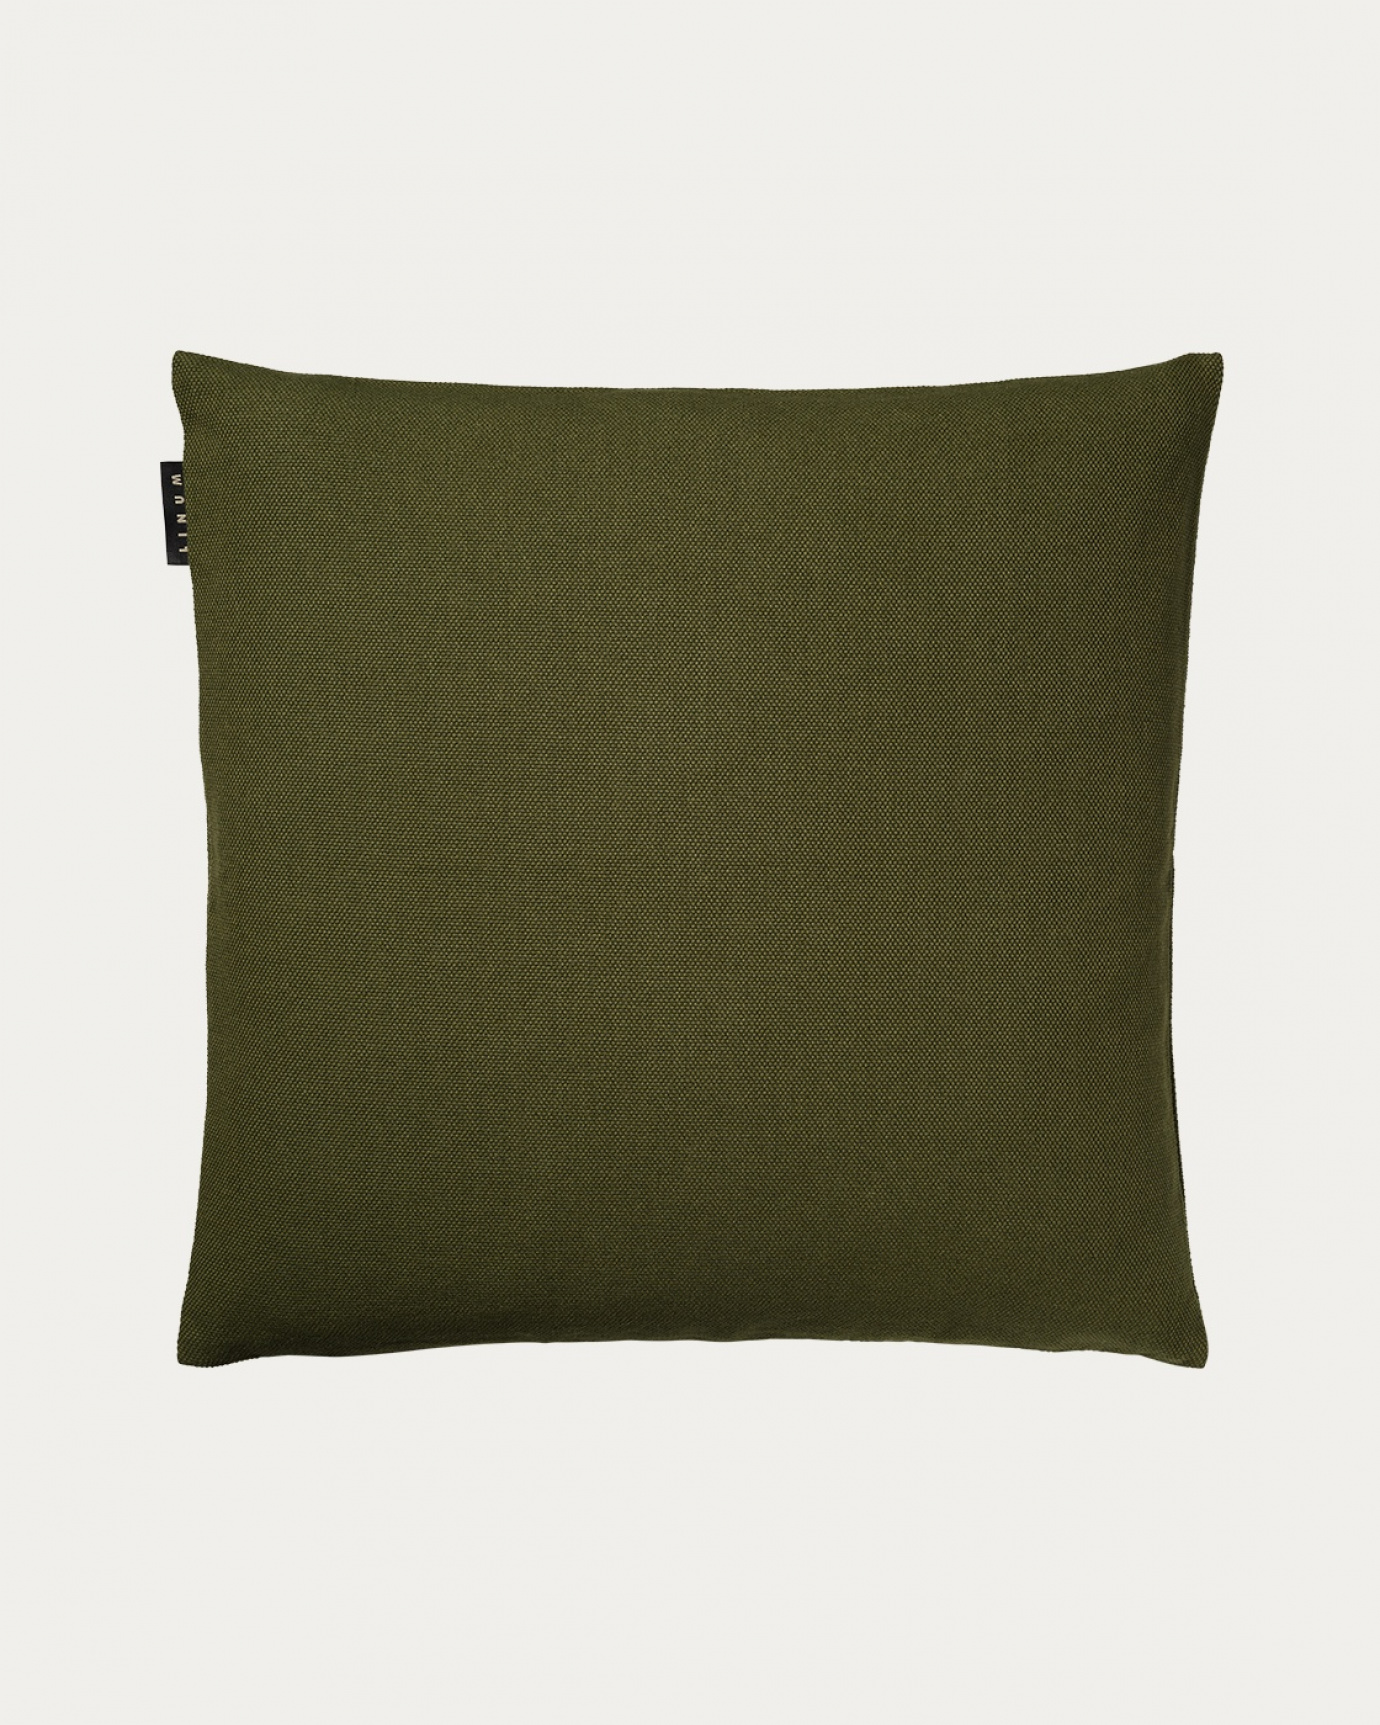 Produktbild mörk olivgrön PEPPER kuddfodral av mjuk bomull från LINUM DESIGN. Lätt att tvätta och hållbar genom generationer. Storlek 50x50 cm.